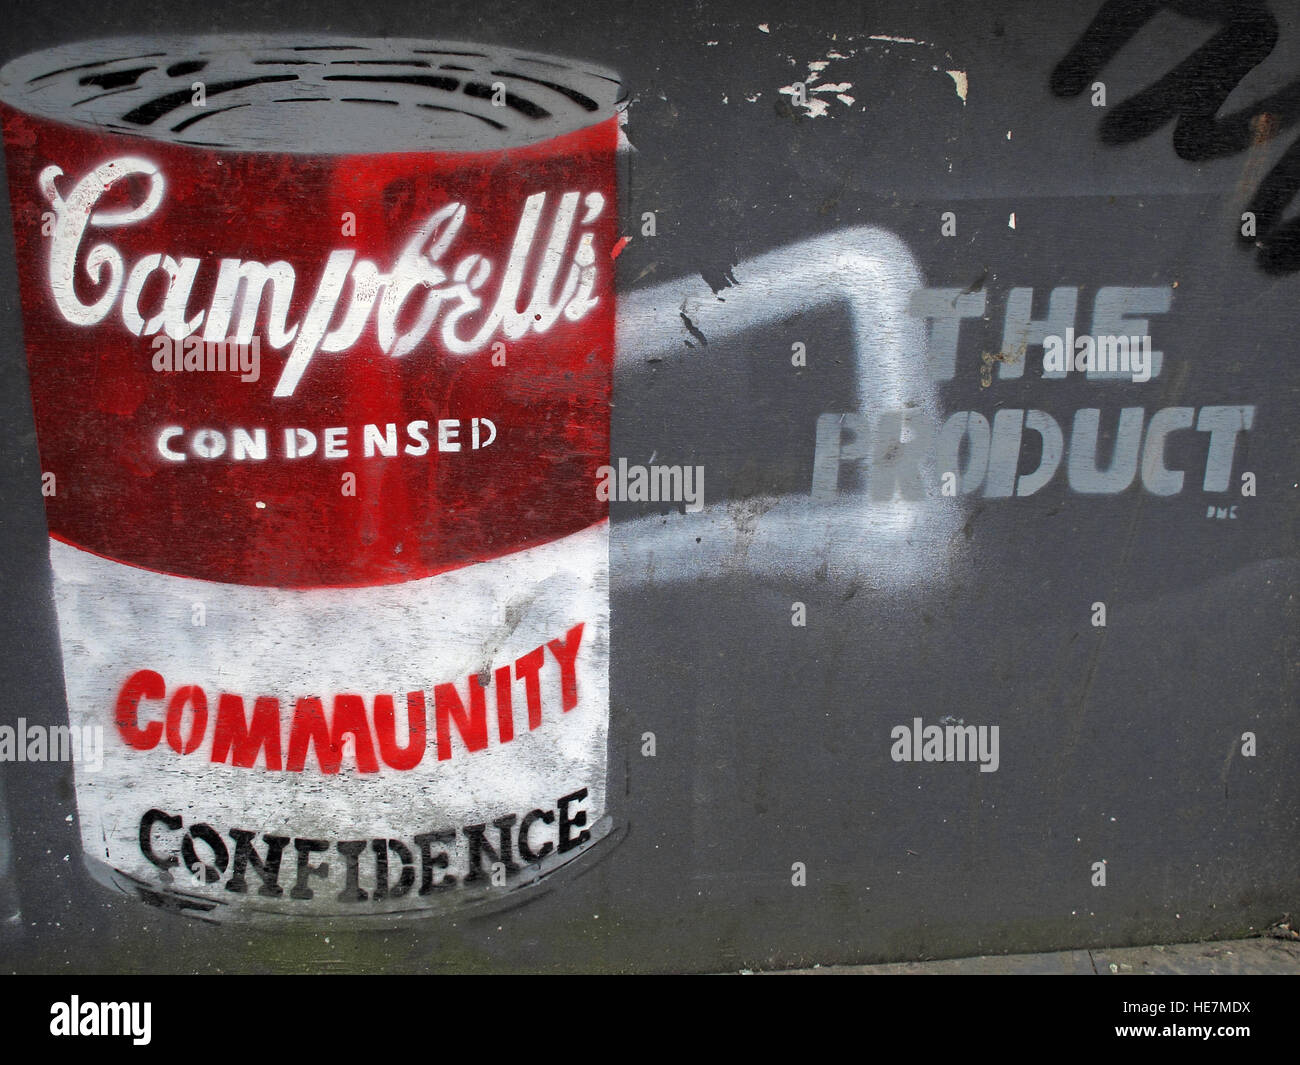 Vertrauen in die Gemeinschaft, Campbells, Suppendose, Graffiti in Belfast Garfield Street Stadtzentrum, Nordirland, Großbritannien Stockfoto